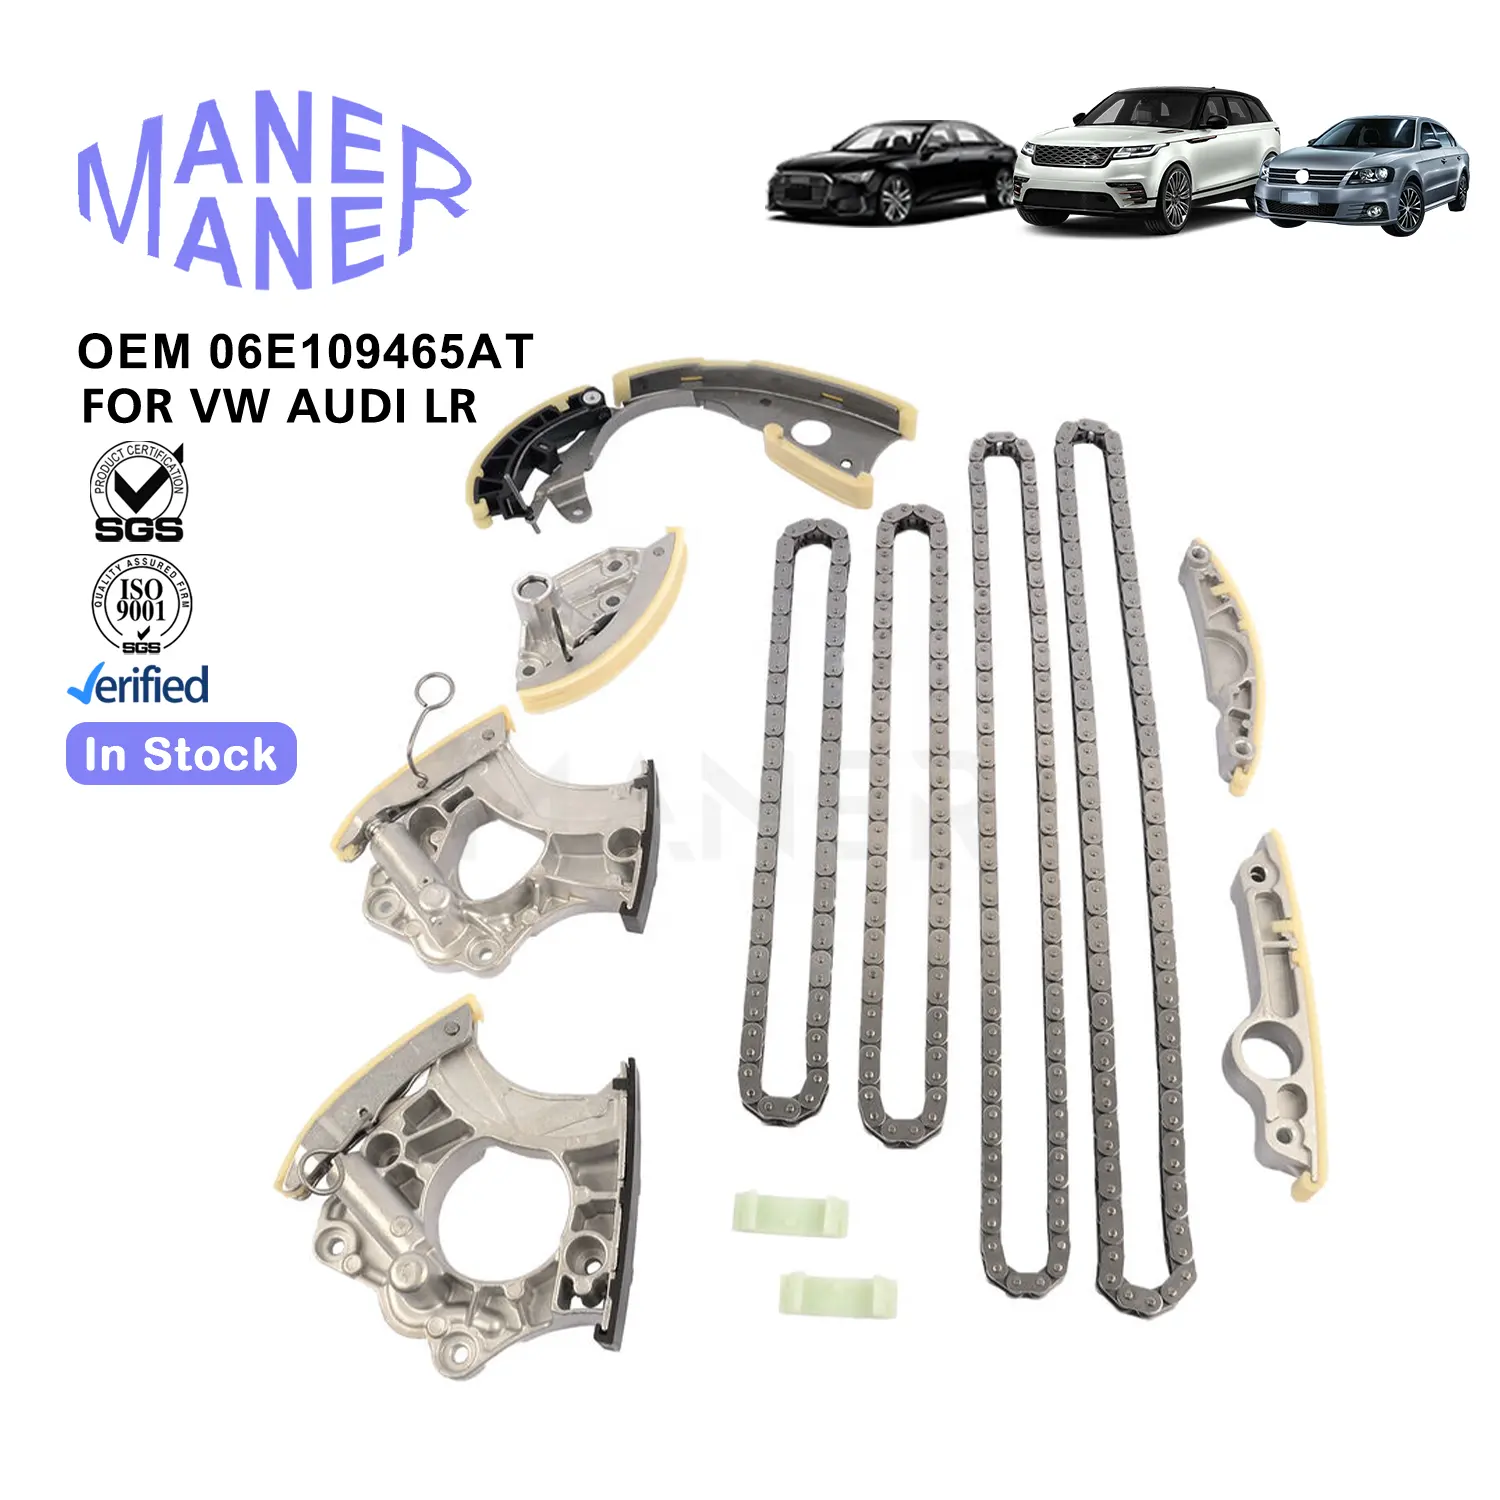 MANER Auto sistemi motore 06 e109465at 06 e109465bj produzione KIT catena di distribuzione ben fatto per Bentley Lamborghini Audi VW